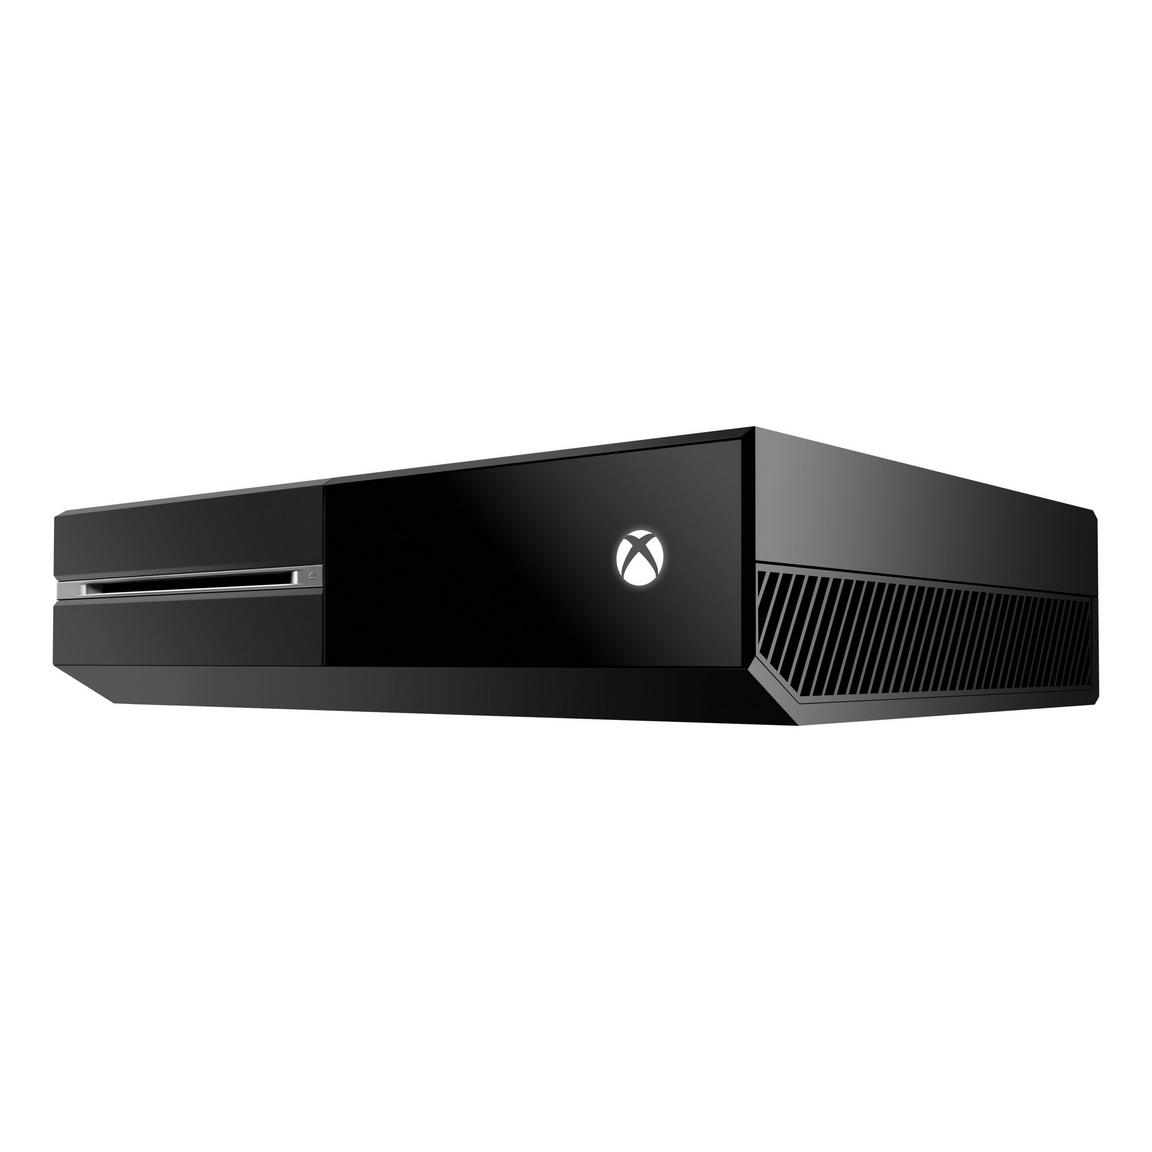 Xbox One 500 GB Black Console - (PRE) (Xbox One)